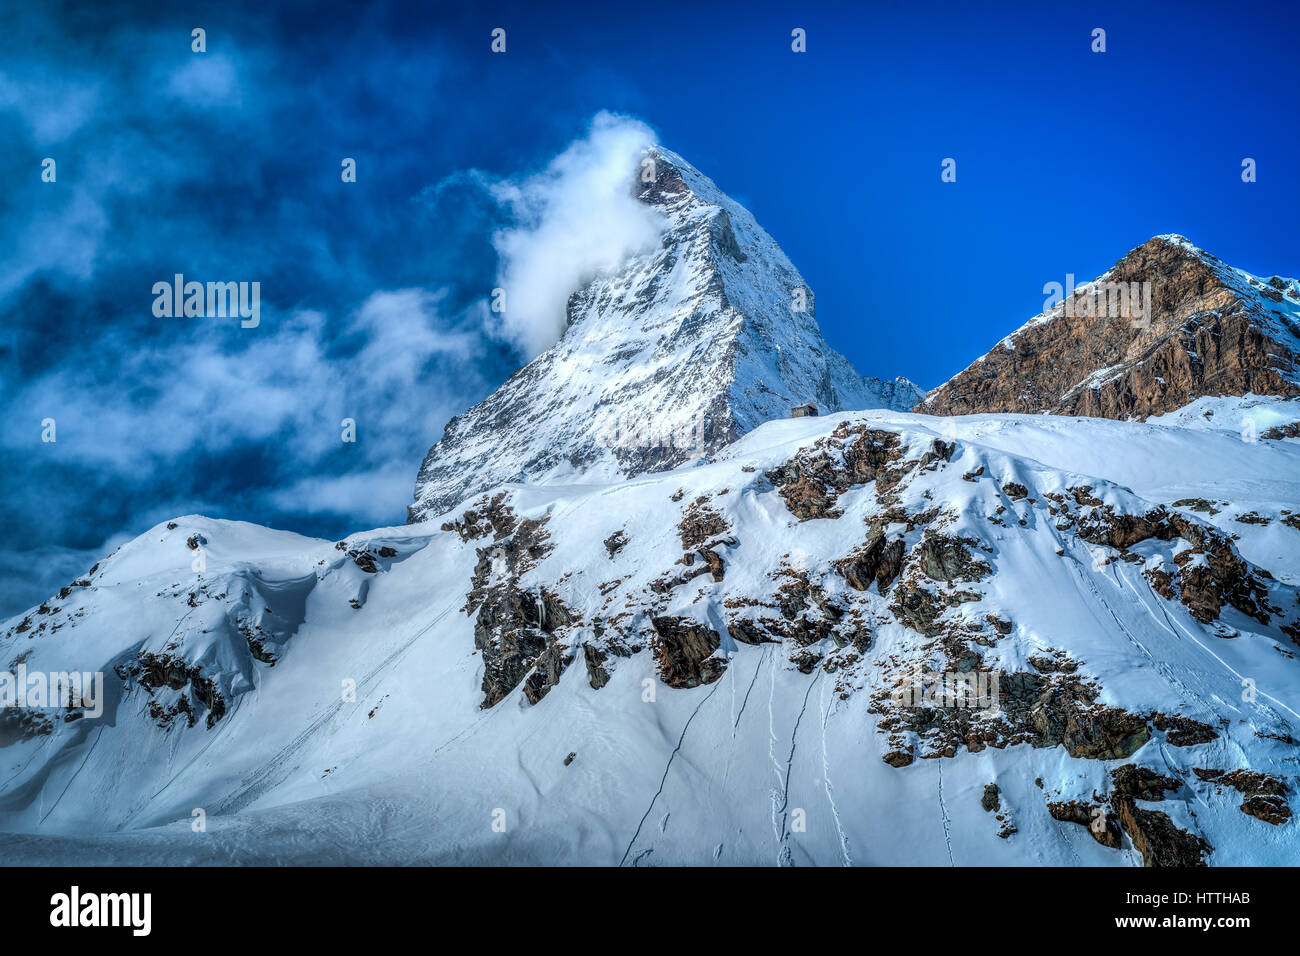 Das Symbol der Schweiz, das Matterhorn in Zermatt. Es kann sein, dass der höchste Berg, aber es ist sicherlich eines der einzigartigsten und schönsten. Stockfoto